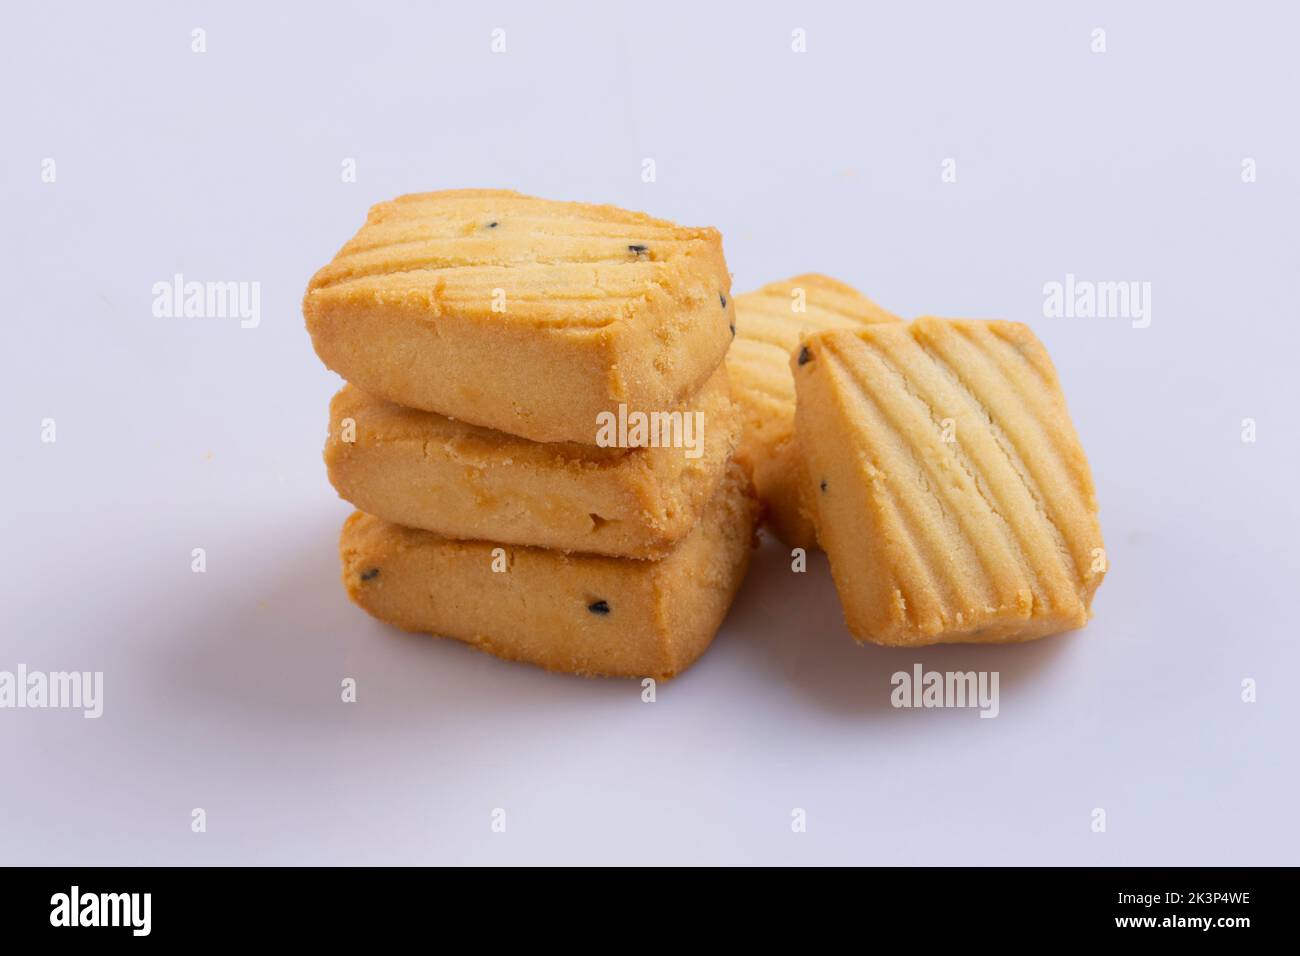 Raccolta di biscotti su sfondo bianco, biscotti al burro, biscotti al cioccolato, biscotti al caffè, biscotti alle ardesie ecc. Foto Stock